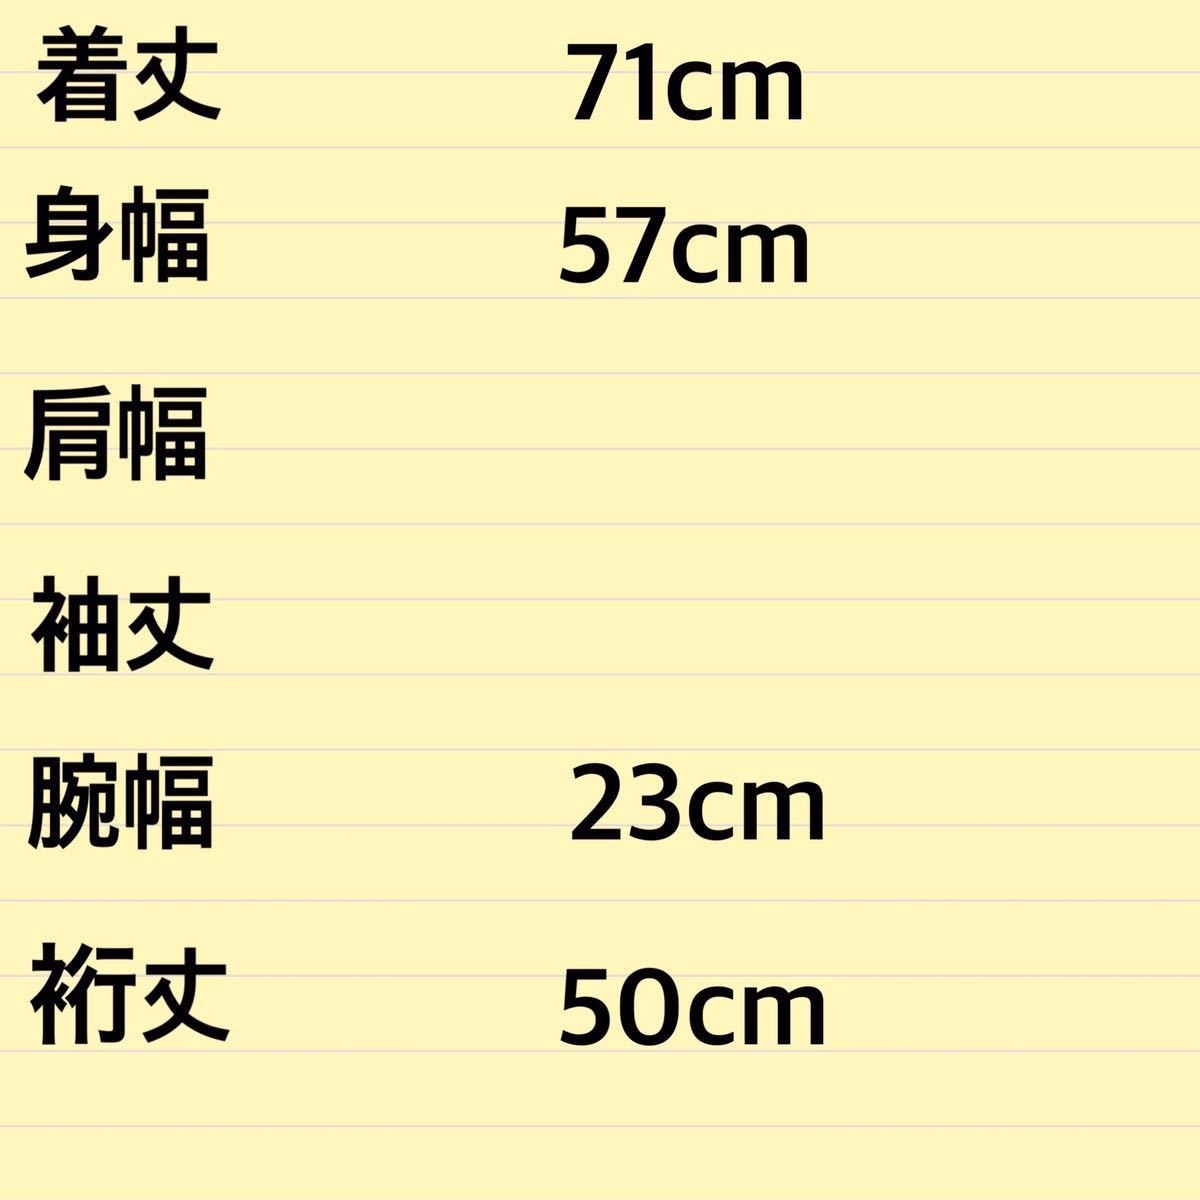 K168TC мужской футболка FATefe- чай короткий рукав принт Brown чай отделка Lynn ga- Street / L единый по всей стране стоимость доставки 370 иен 